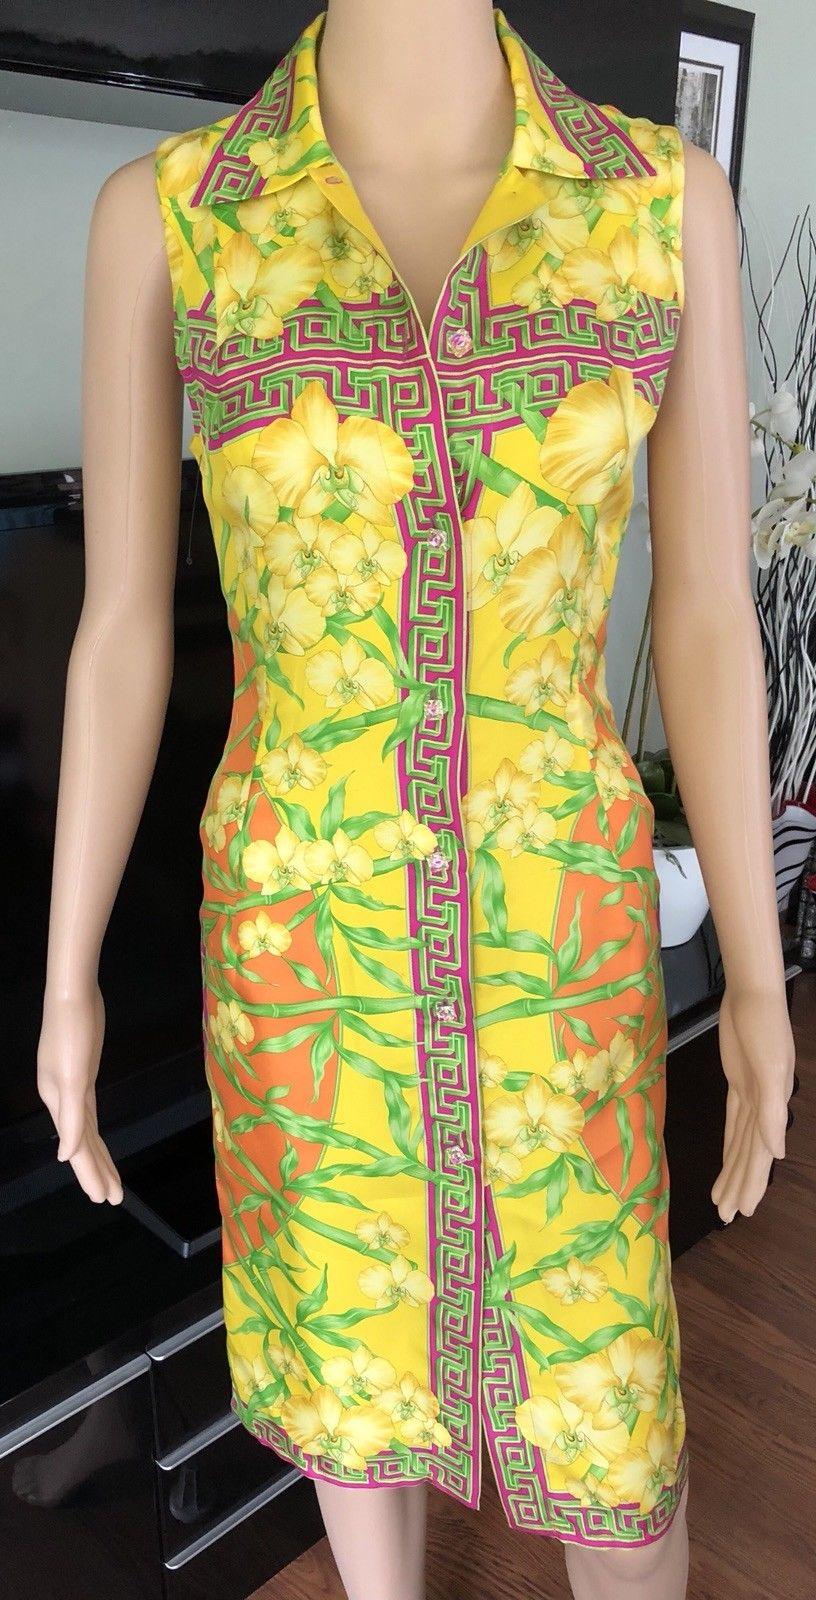 Gianni Versace S/S 2000 Vintage Bamboo Print Seidenkleid Größe IT 40

Gianni Versace Seidenkleid mit durchgehendem Bambusblumenprint, spitzem Kragen und Knopfverschlüssen vorne.


